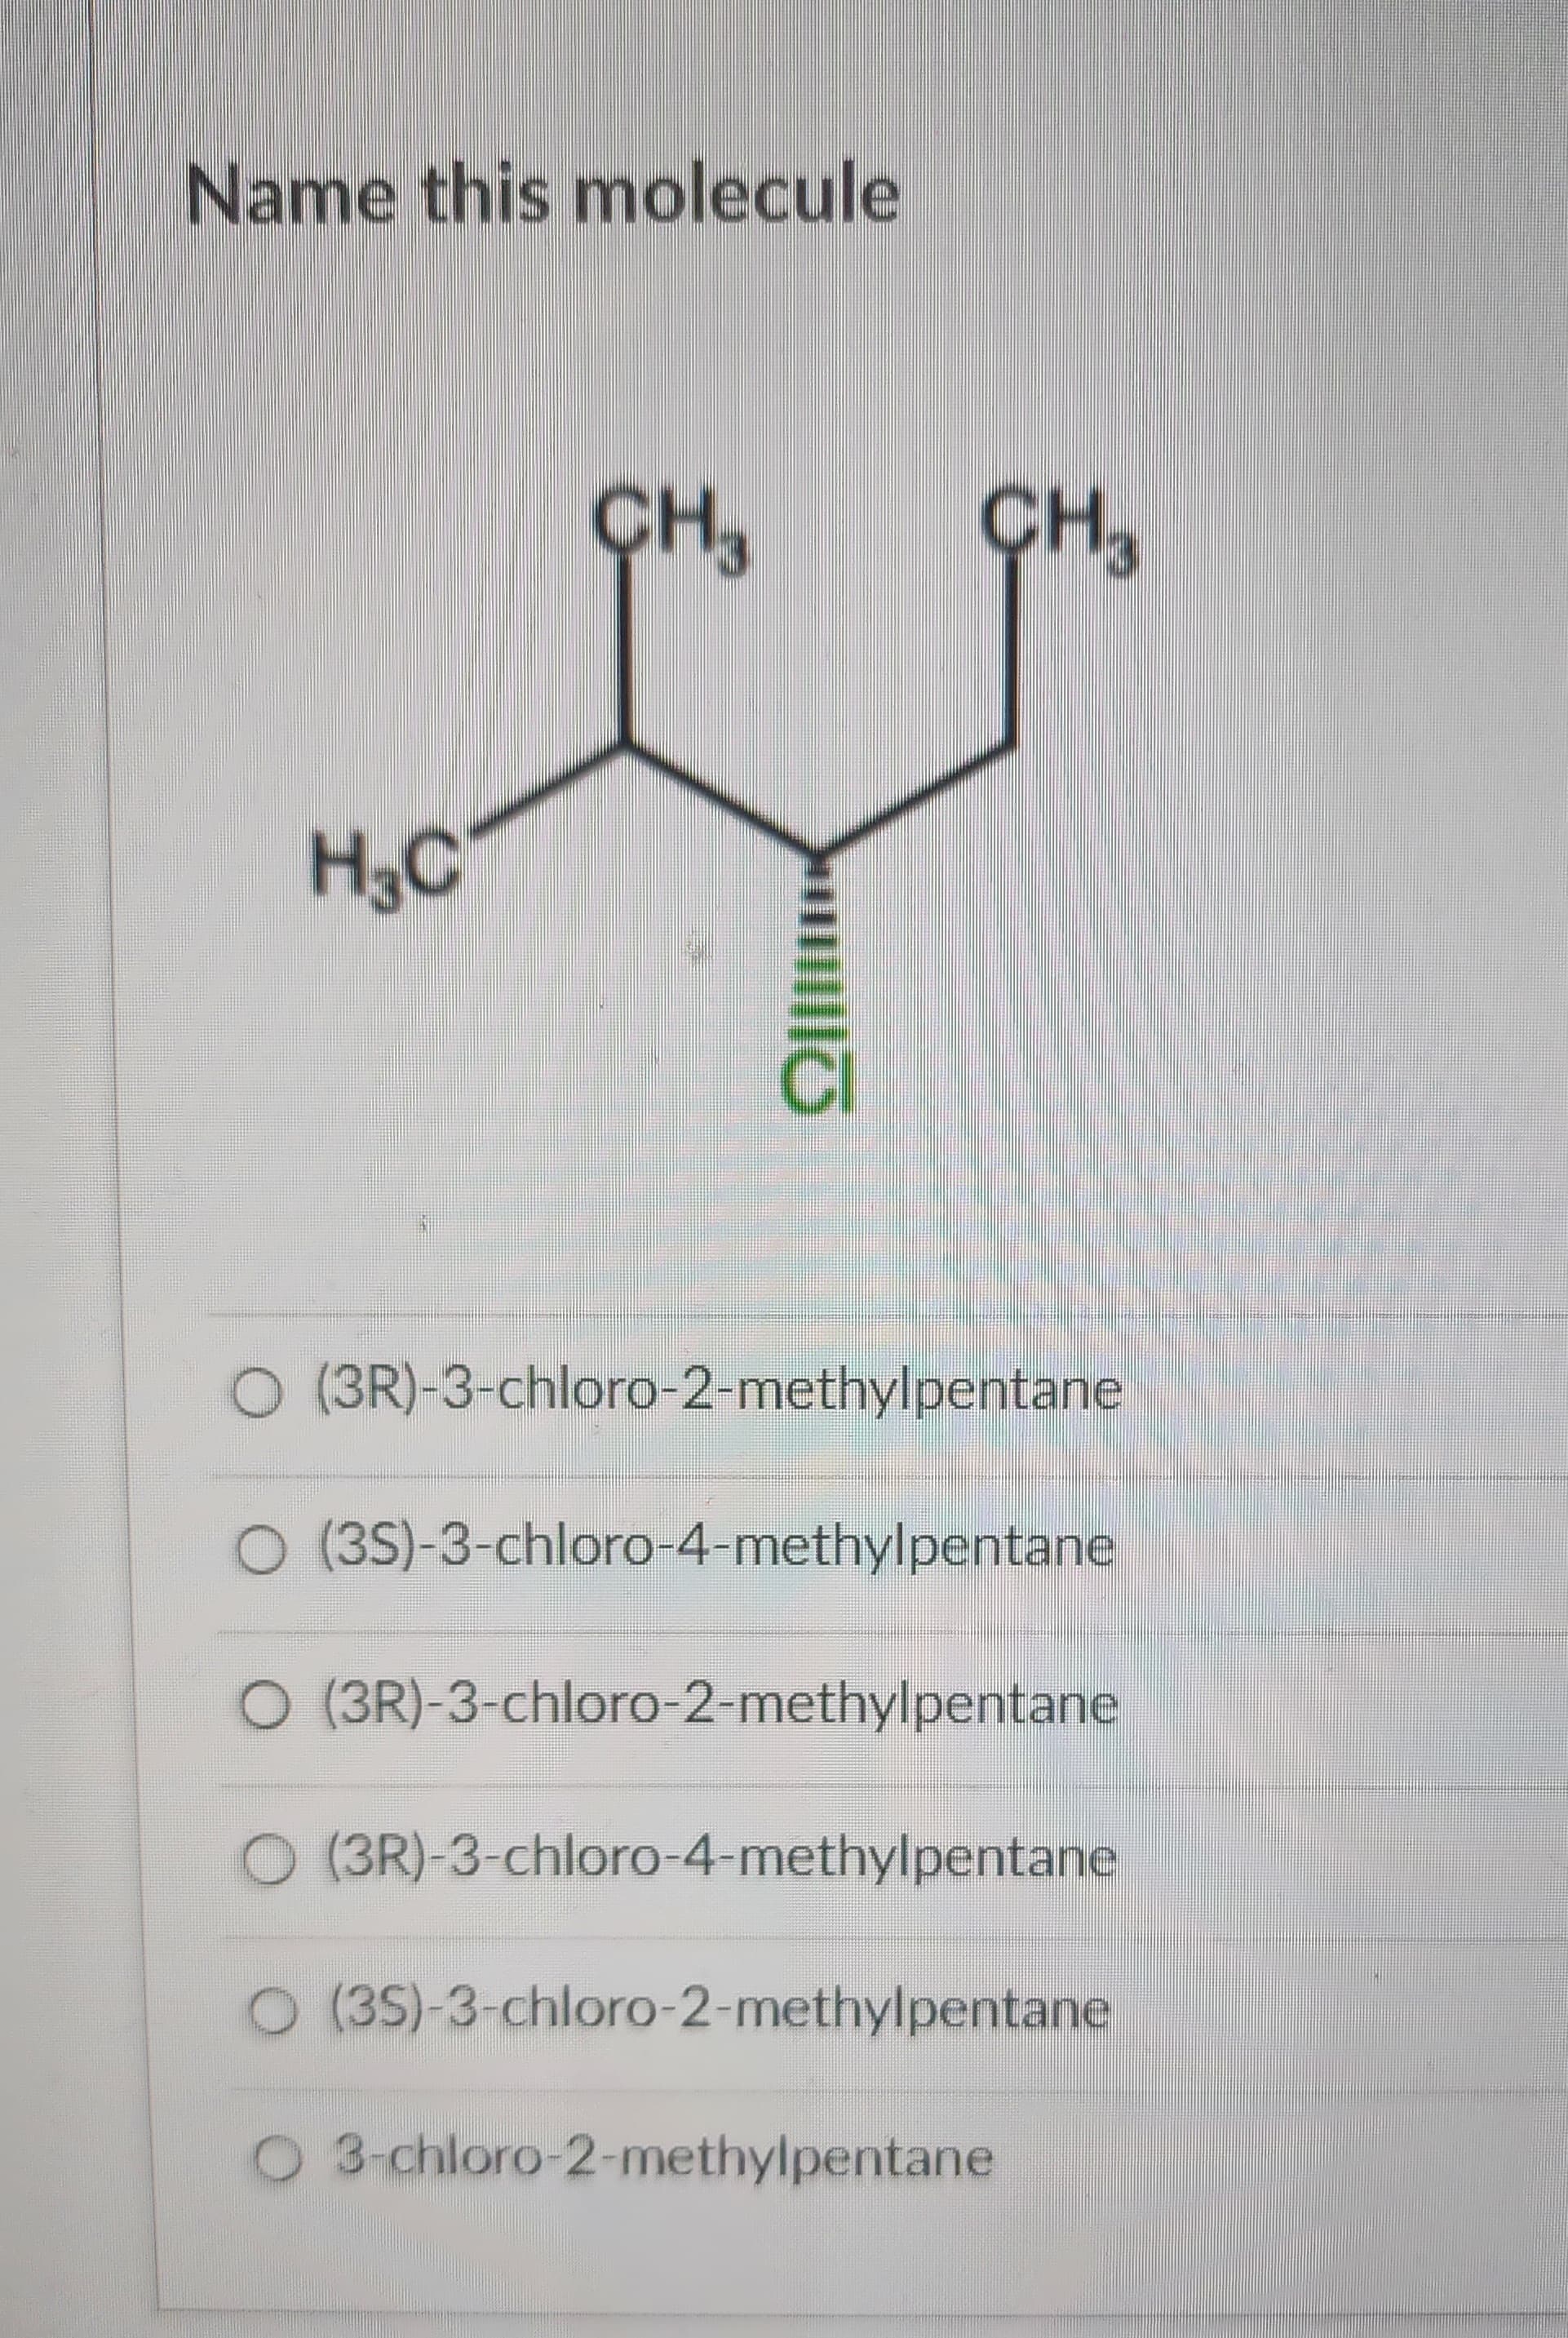 Name this molecule
H3C
CH₂
CH3
O (3R)-3-chloro-2-methylpentane
O (3S)-3-chloro-4-methylpentane
O (3R)-3-chloro-2-methylpentane
O (3R)-3-chloro-4-methylpentane
O (3S)-3-chloro-2-methylpentane
O 3-chloro-2-methylpentane